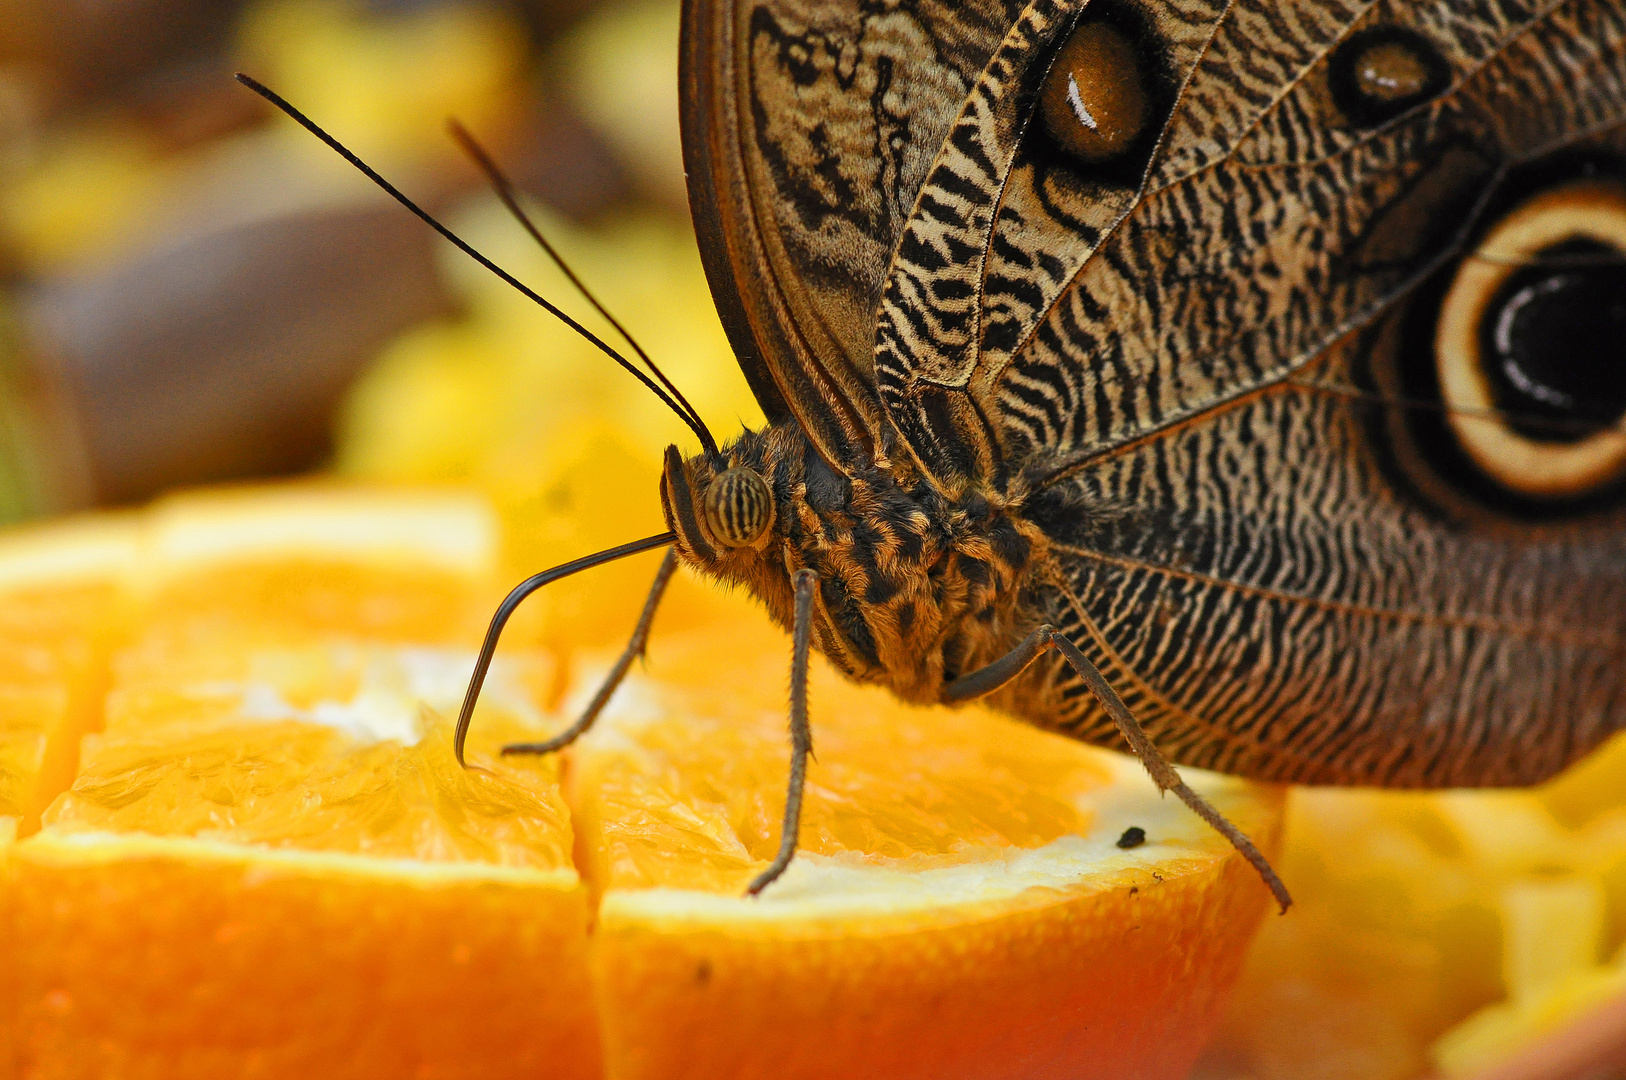 Caligo auf einer Orangenscheibe